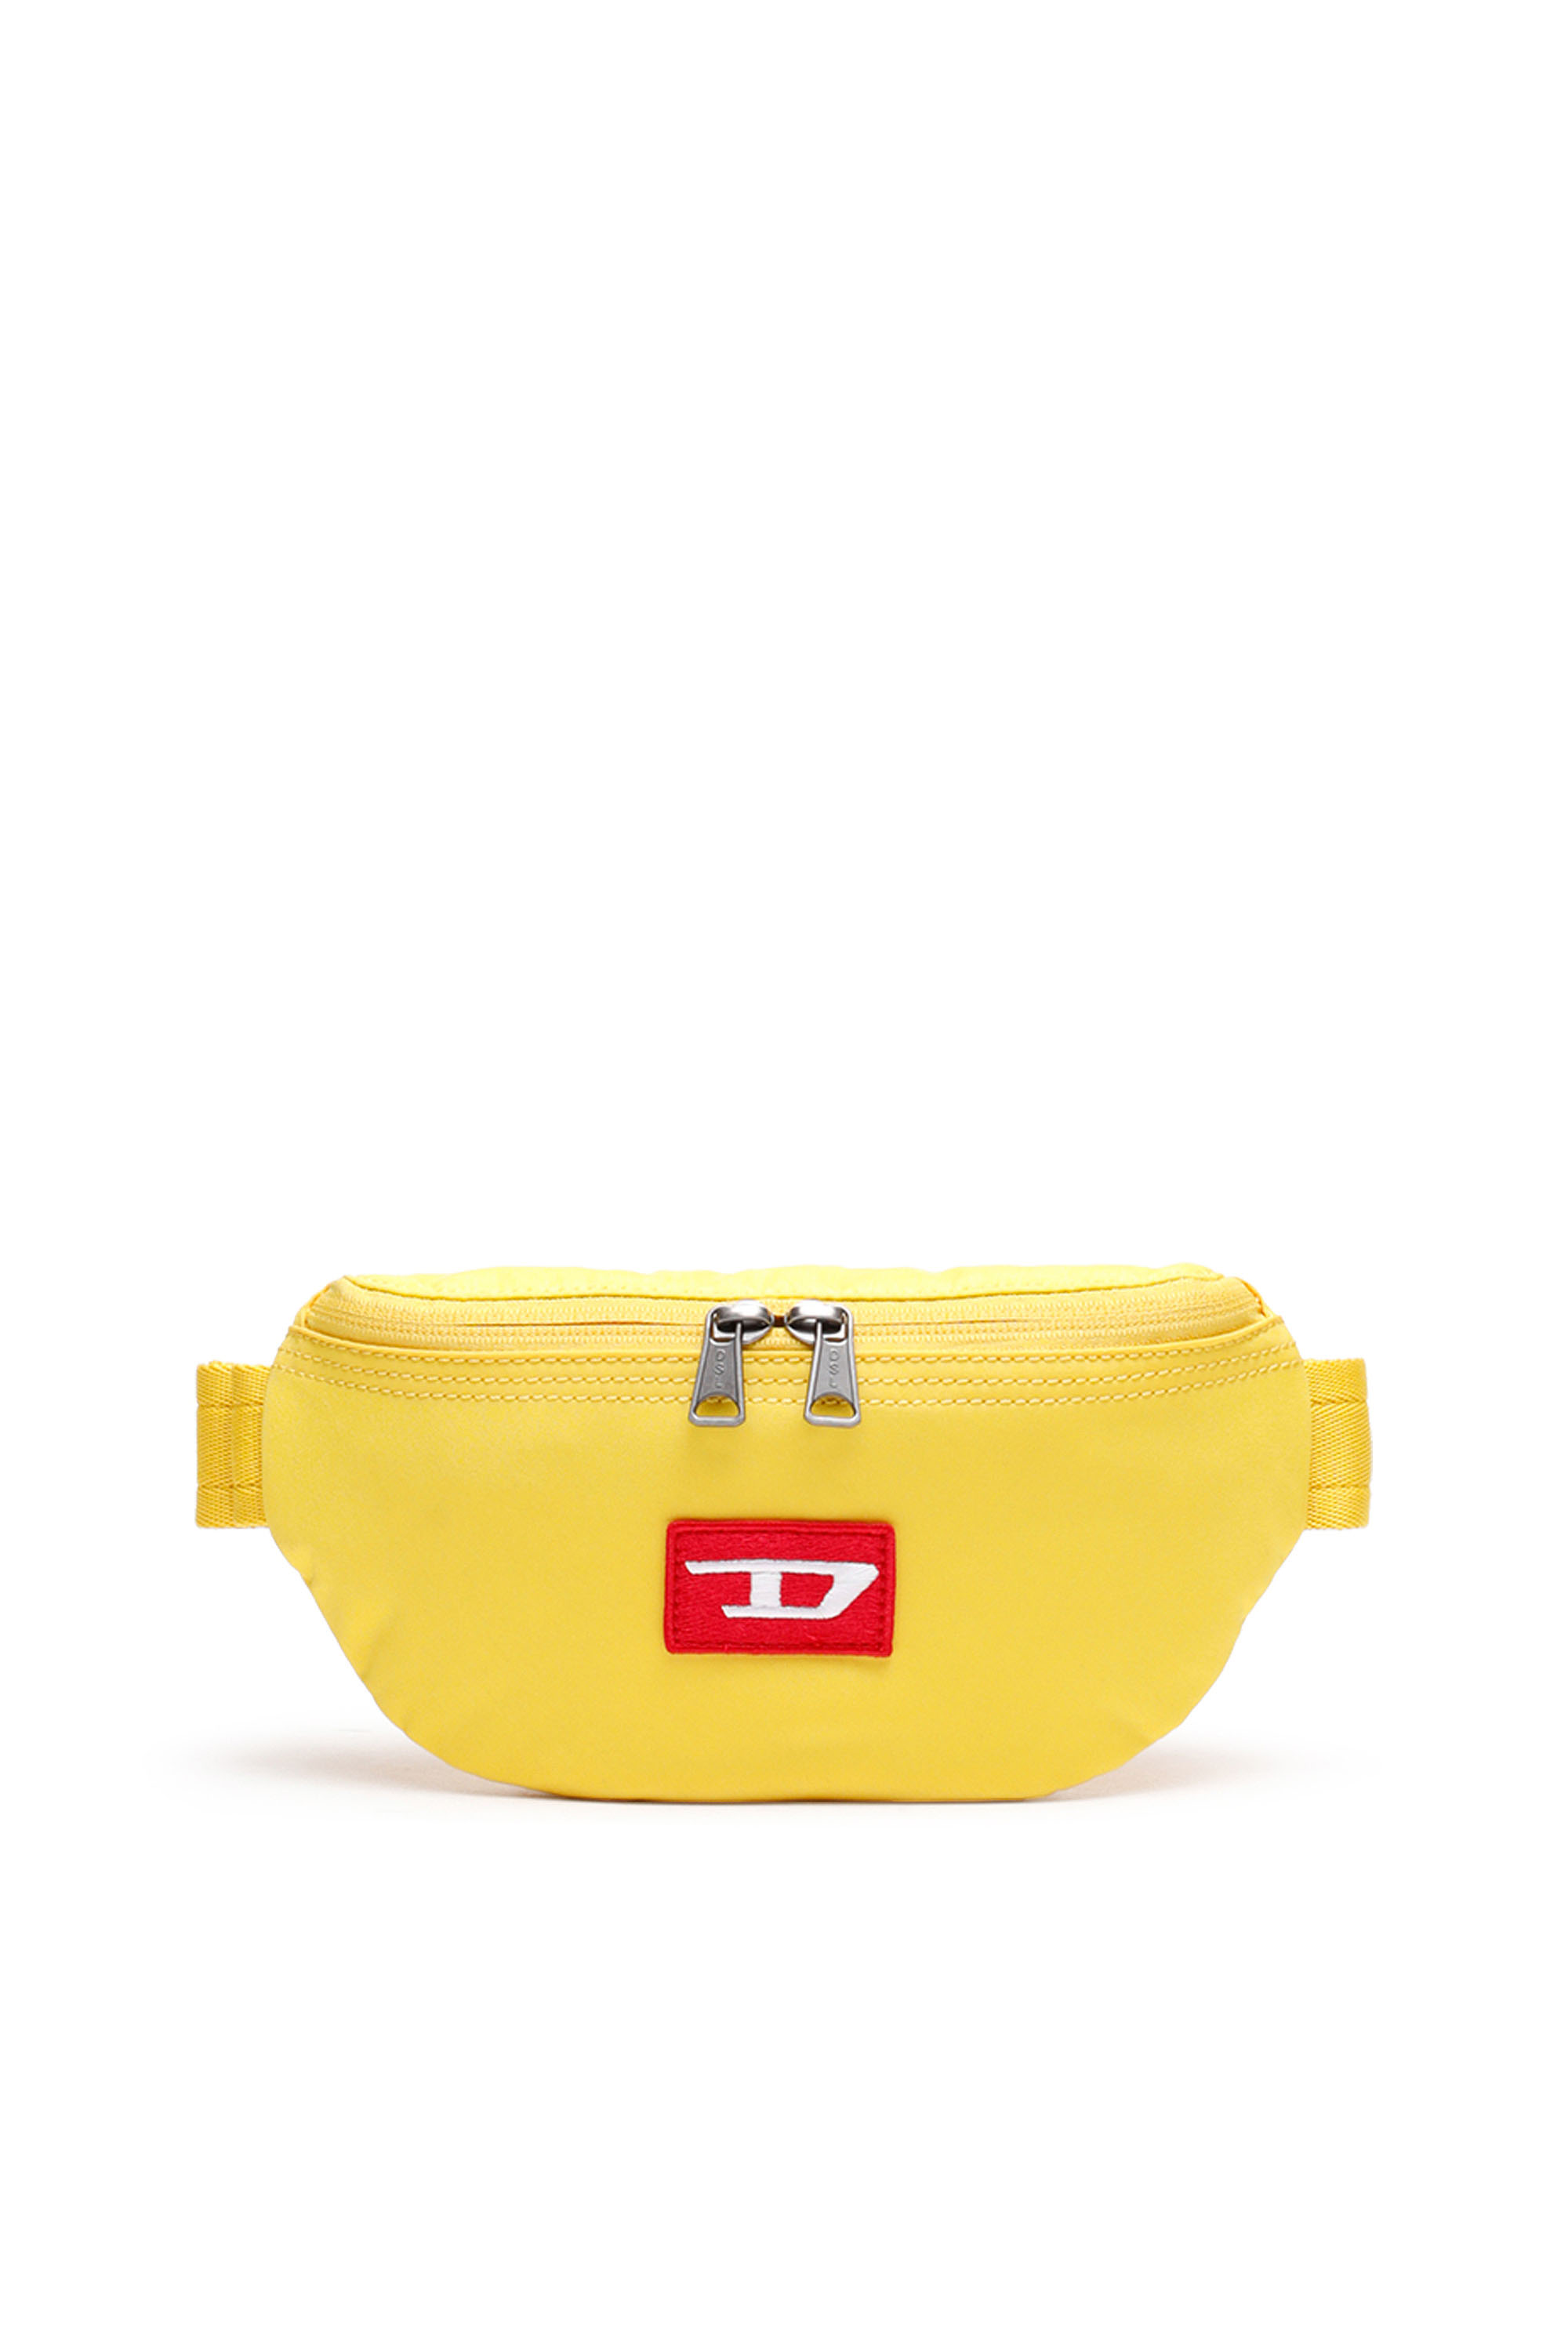 Diesel - CAROT, Yellow - Image 1